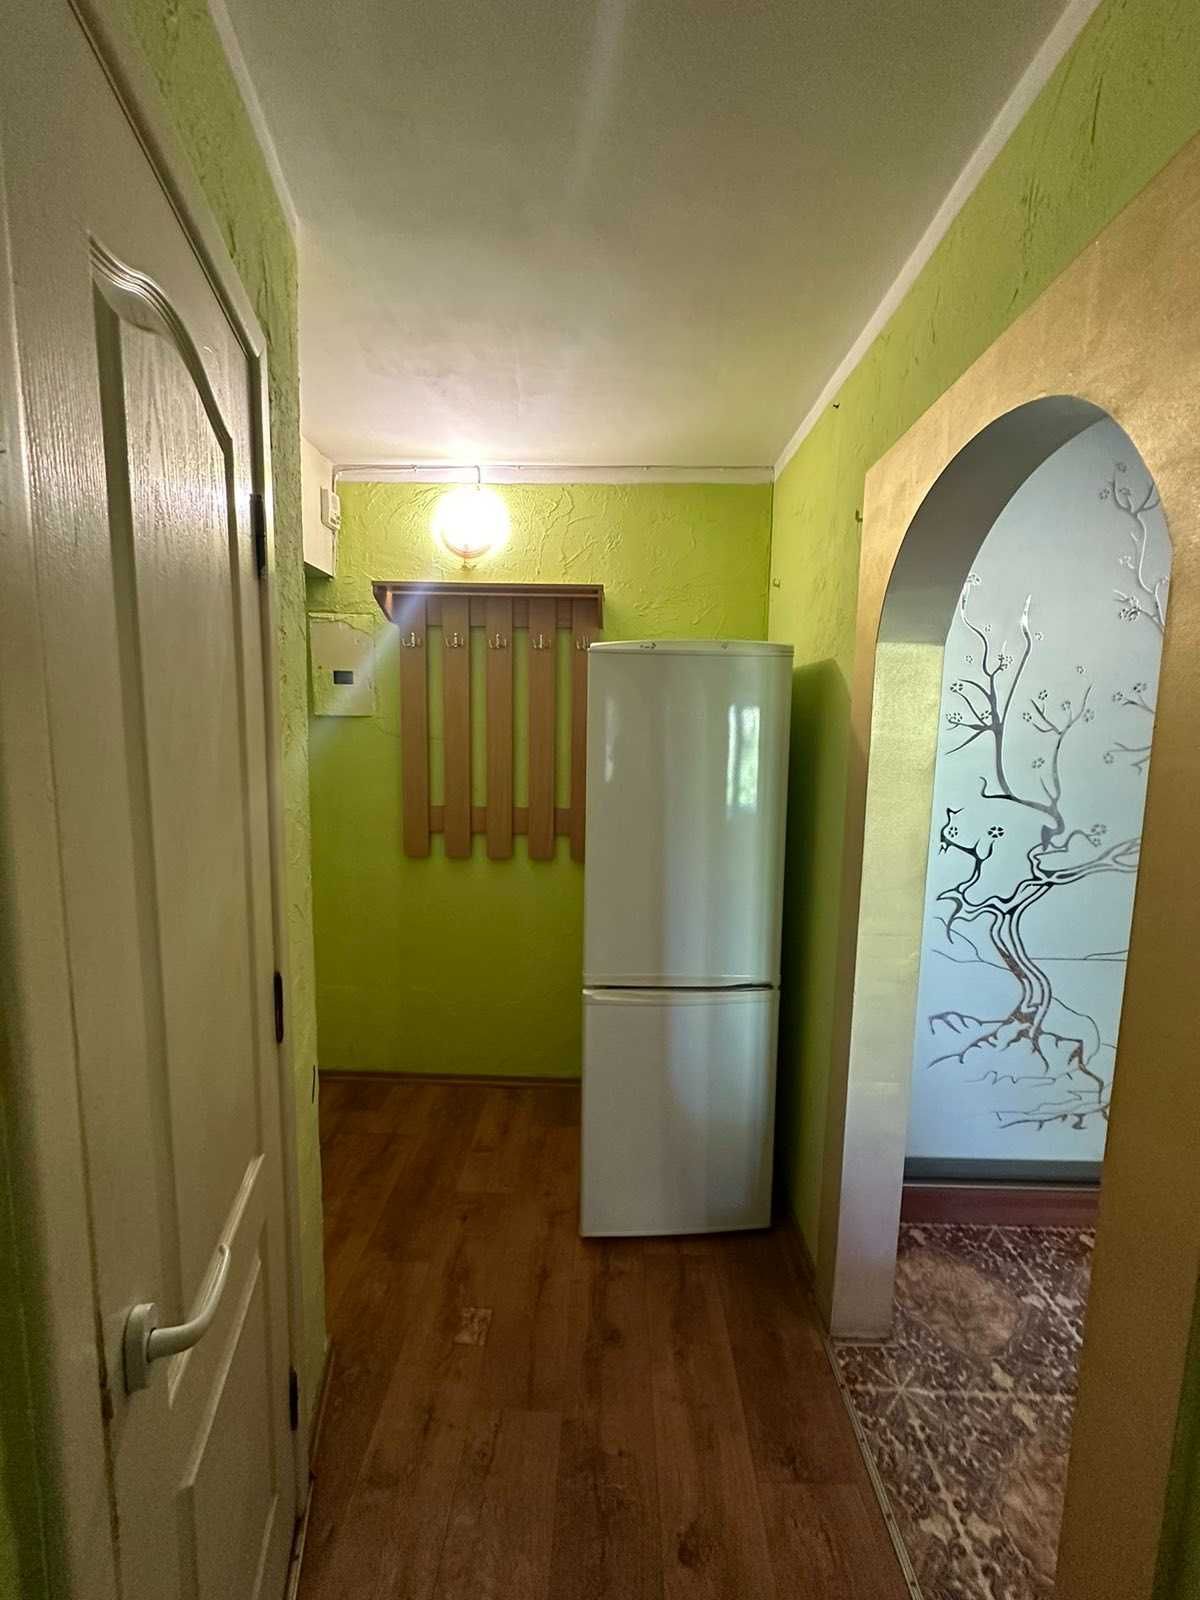 Продам 2 комнатную квартиру на Черемушках по улице Варненская